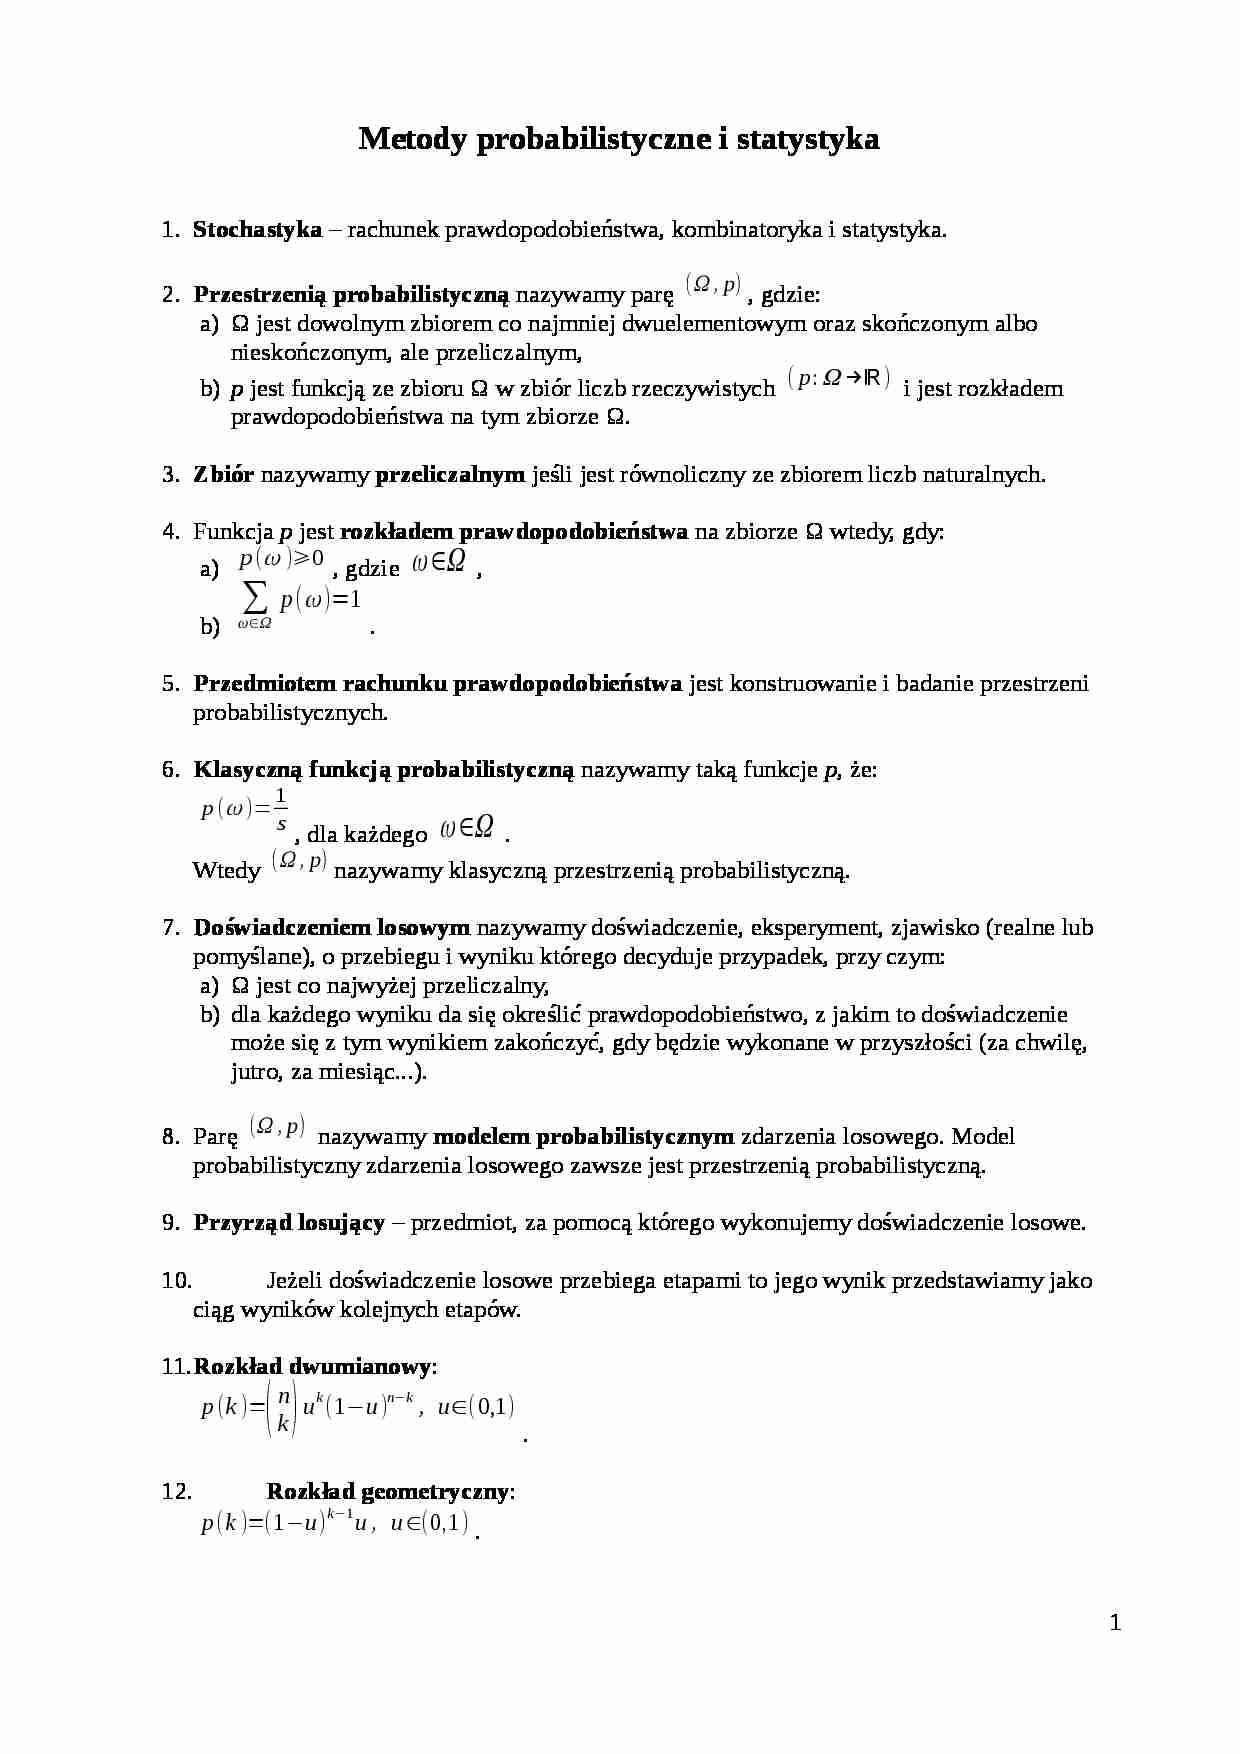 Metody probabilistyczne i statystyka-opracowanie - strona 1